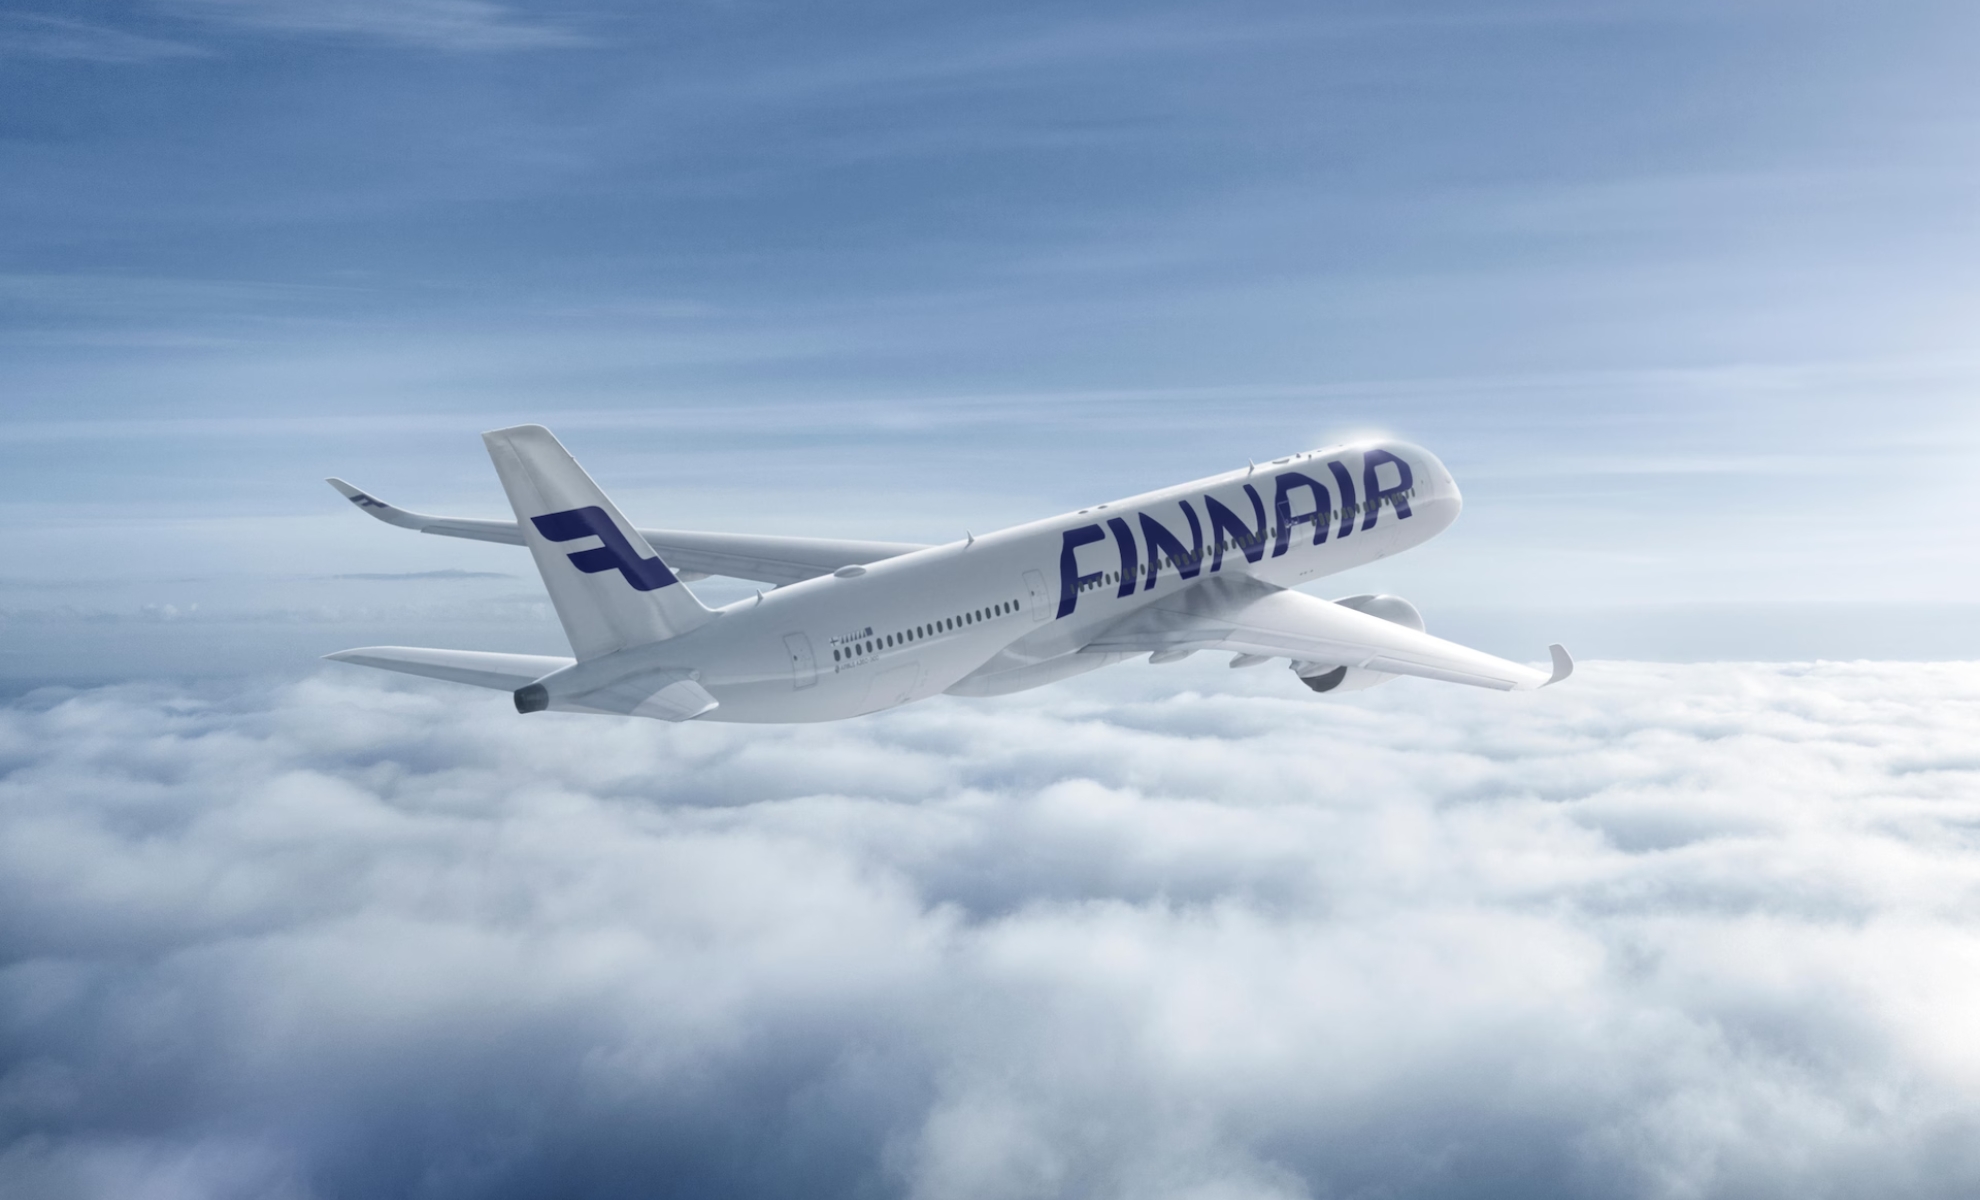 Avion de la compagnie aérienne finlandaise Finnair